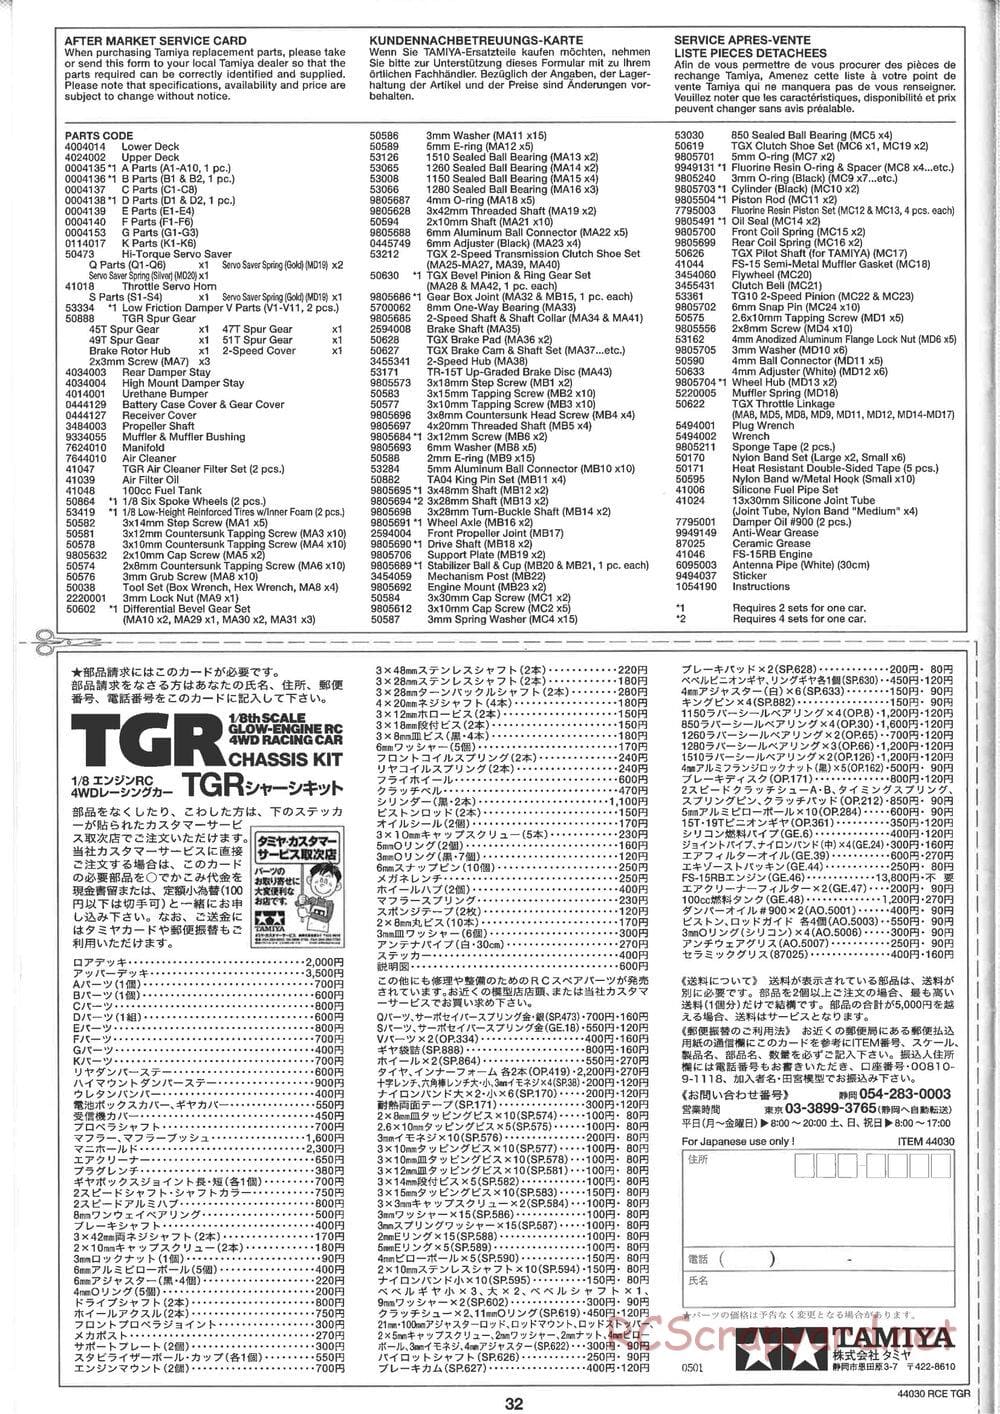 Tamiya - TGR Chassis - Manual - Page 32